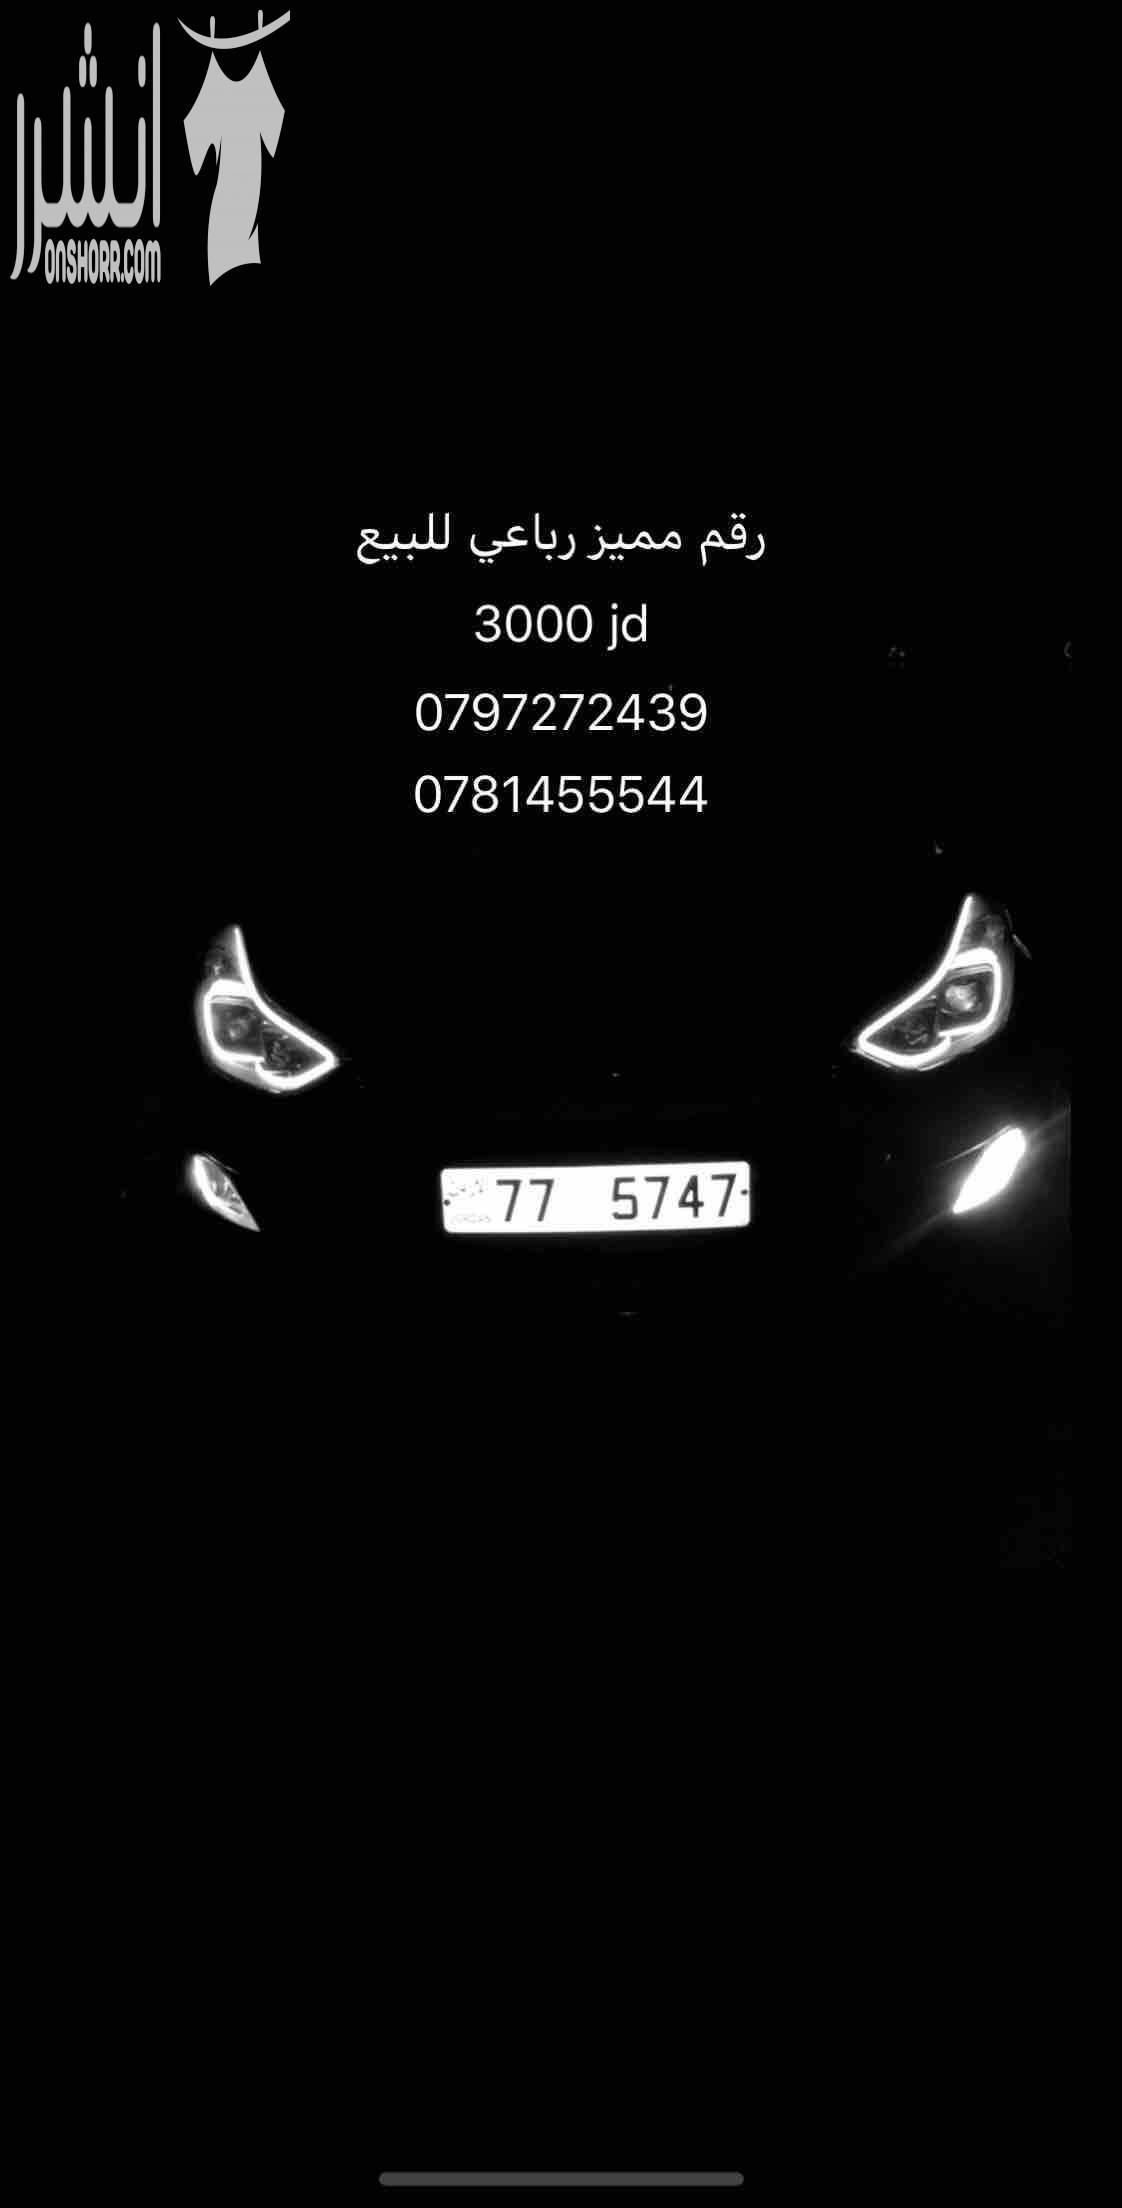 أرقام سيارات مميّزة للبيع في لبنان. واتسأب على الرقم 0096170362405-  رقم رباعي مميز للبيع...